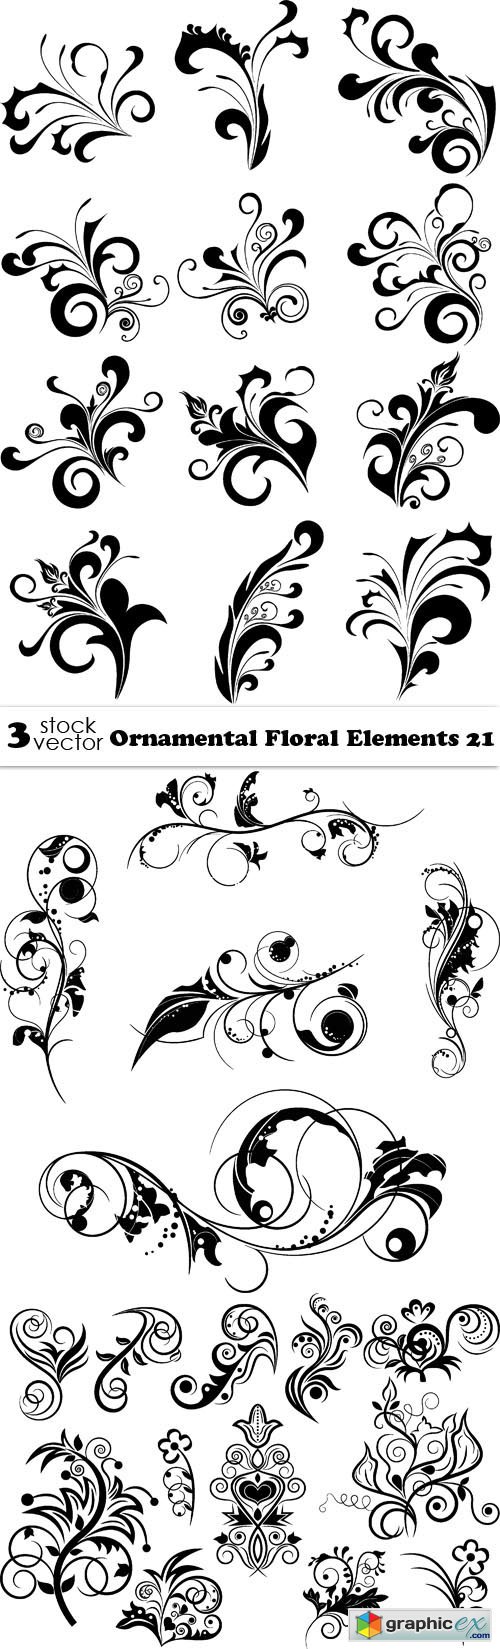 Vectors - Ornamental Floral Elements 21